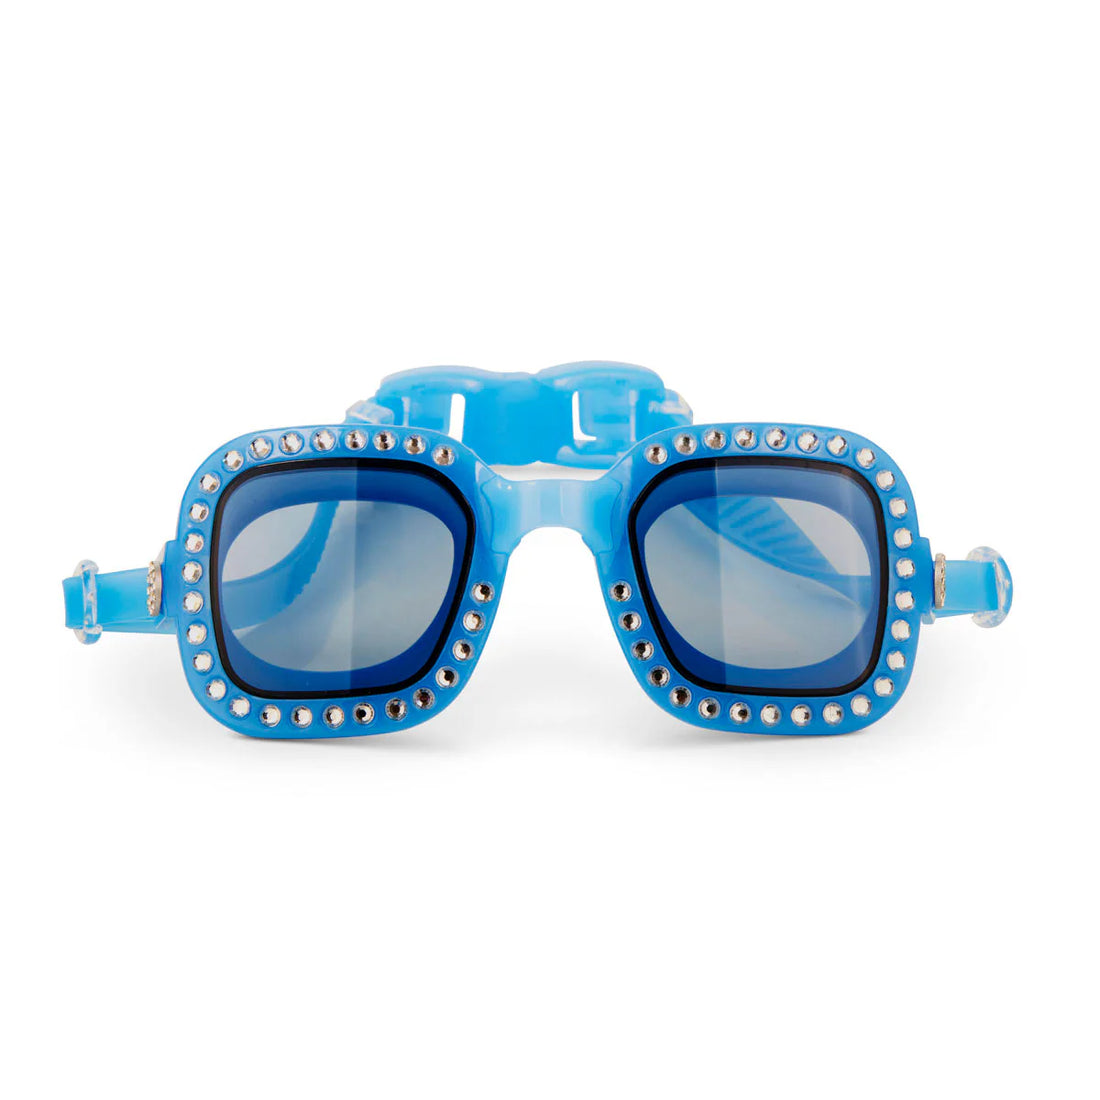 Gafas de natación - Azules Brillantes (+14 años y Adultos)